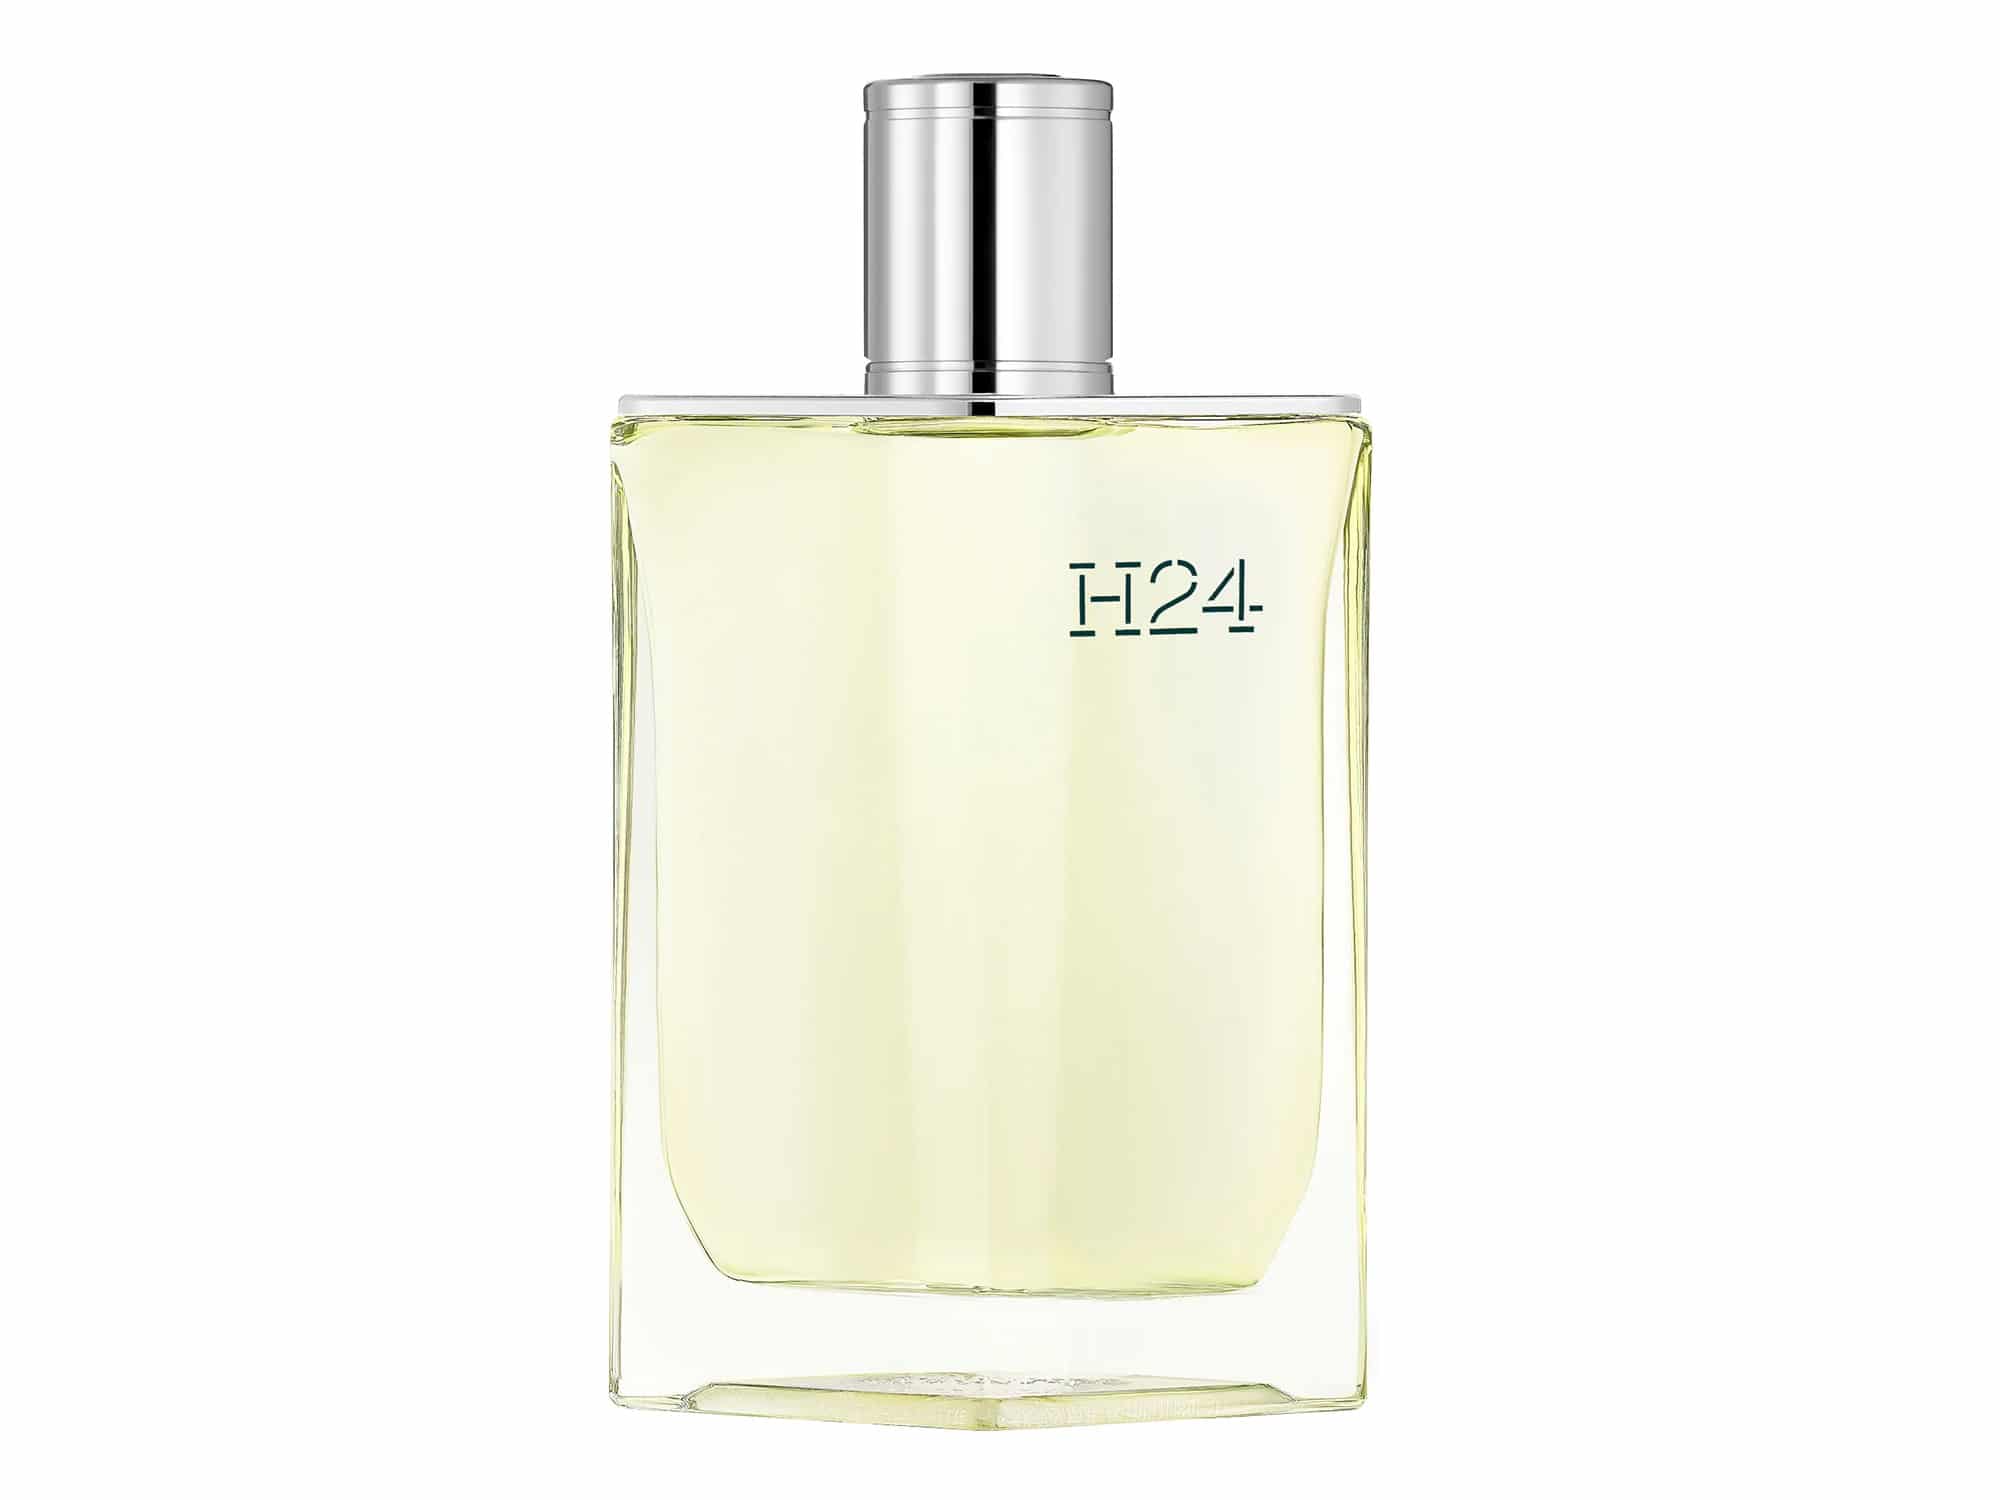 Meilleurs parfums pour homme 2021 - H24 Hermès